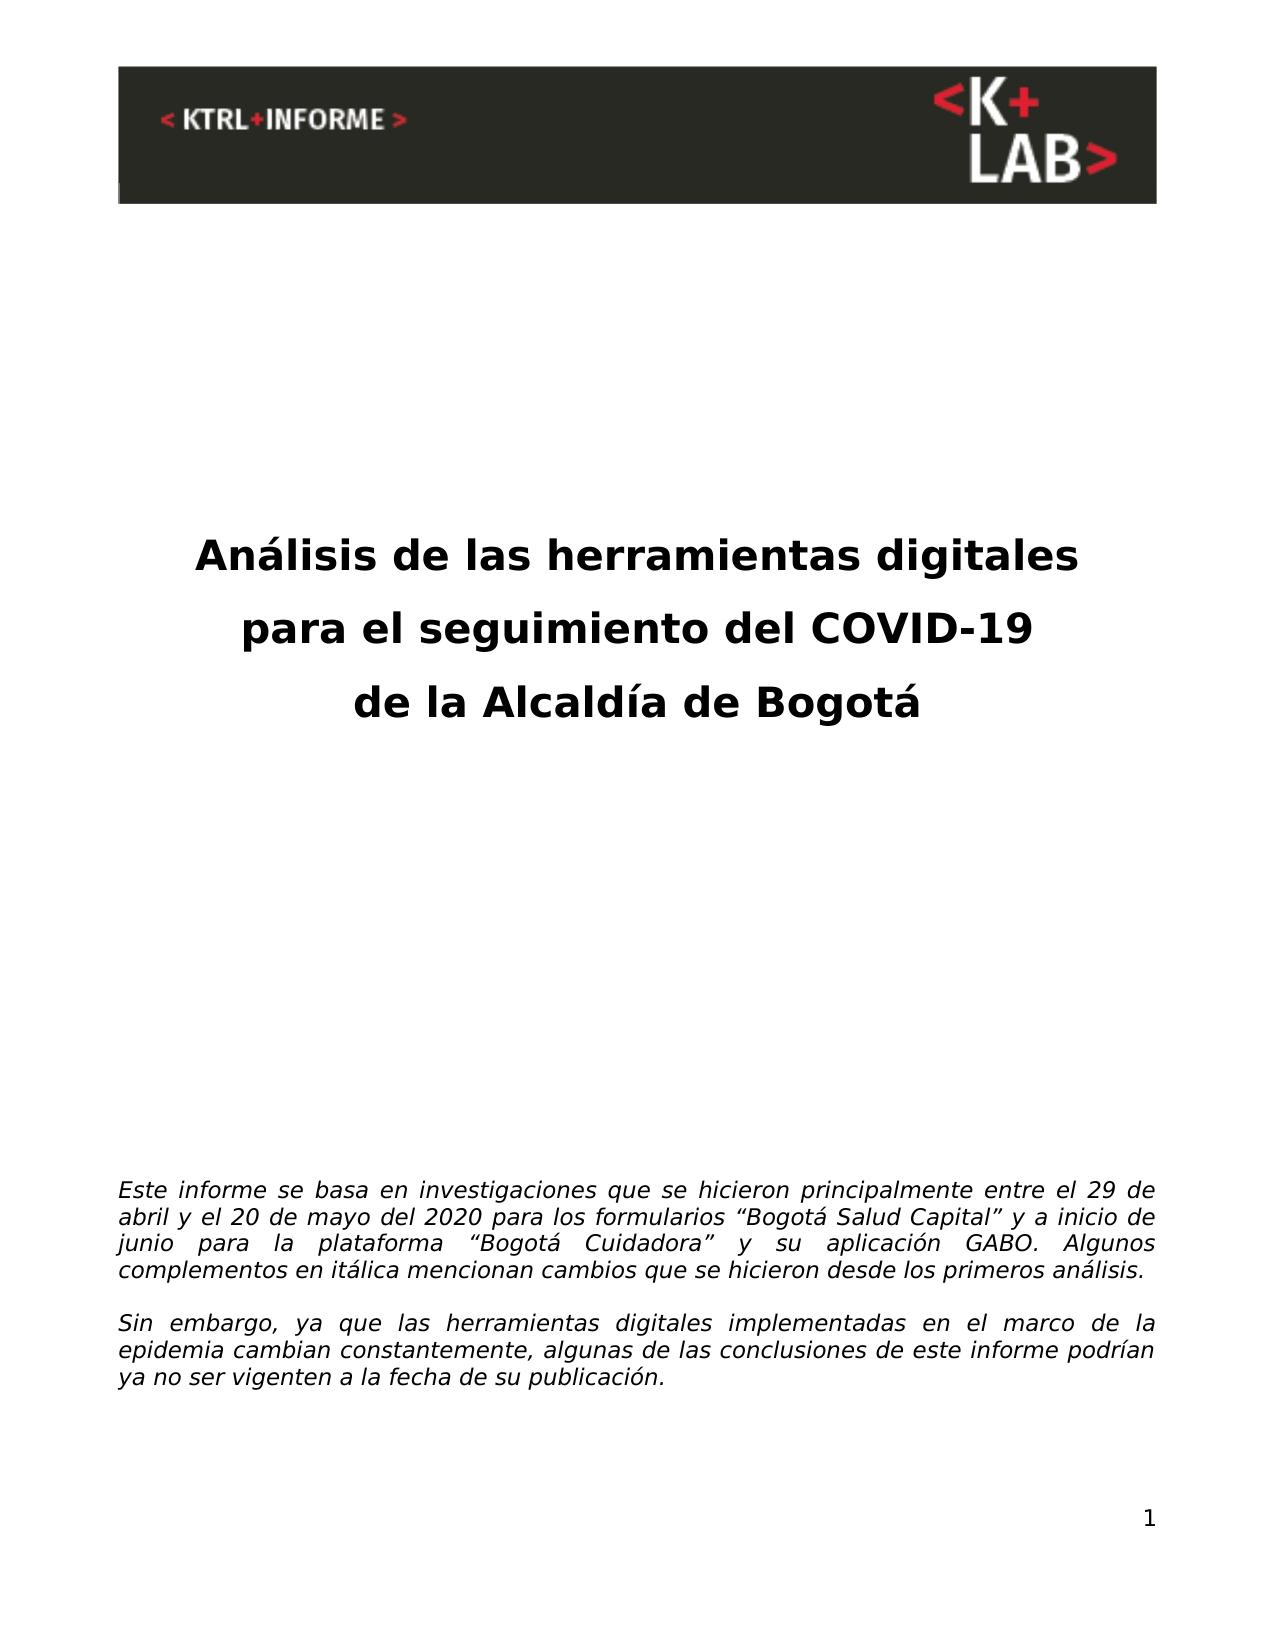 Analisis de las herramientas digitales para el seguimiento del COVID-19 de la Alcaldía de Bogotá